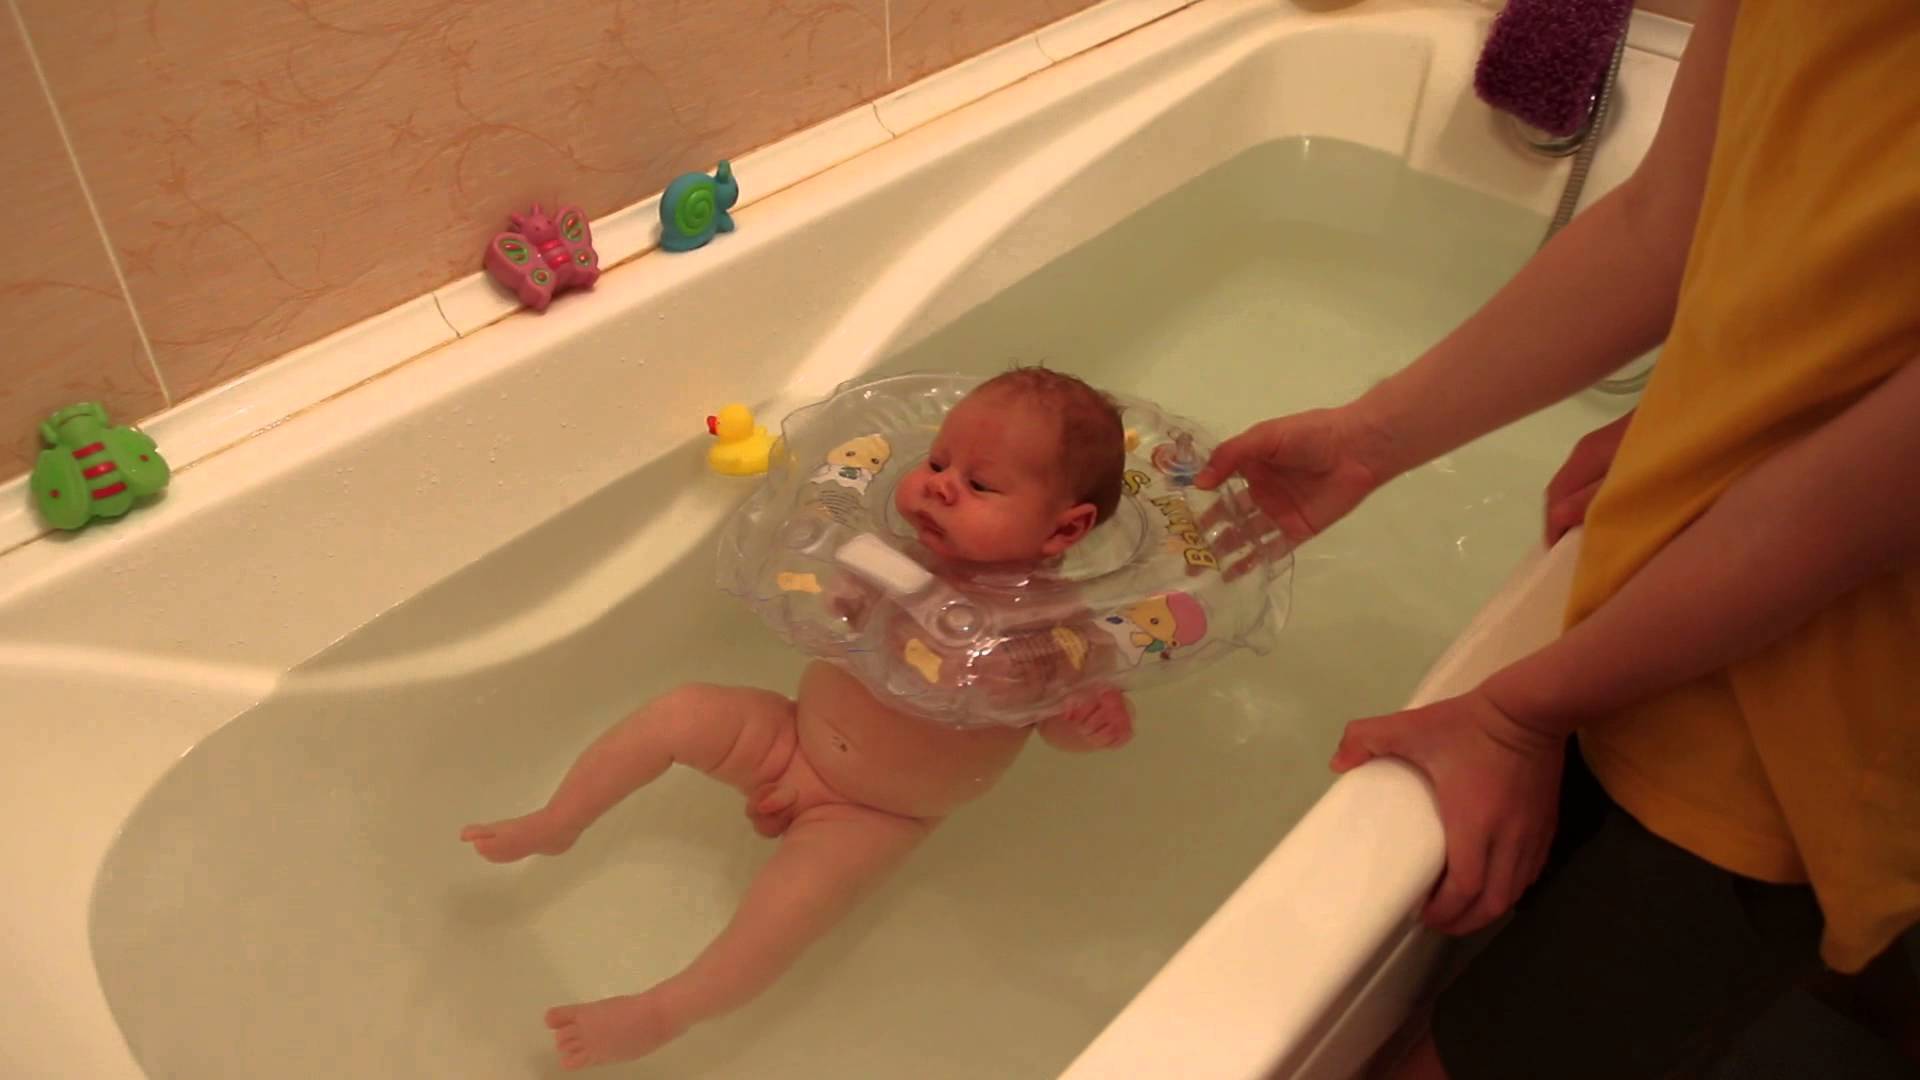 Купание в большой ванной. Купание новорожденногоививанной. Купание новорожденного в ванной. Купается в ванной. Купание младенца в большой ванной.